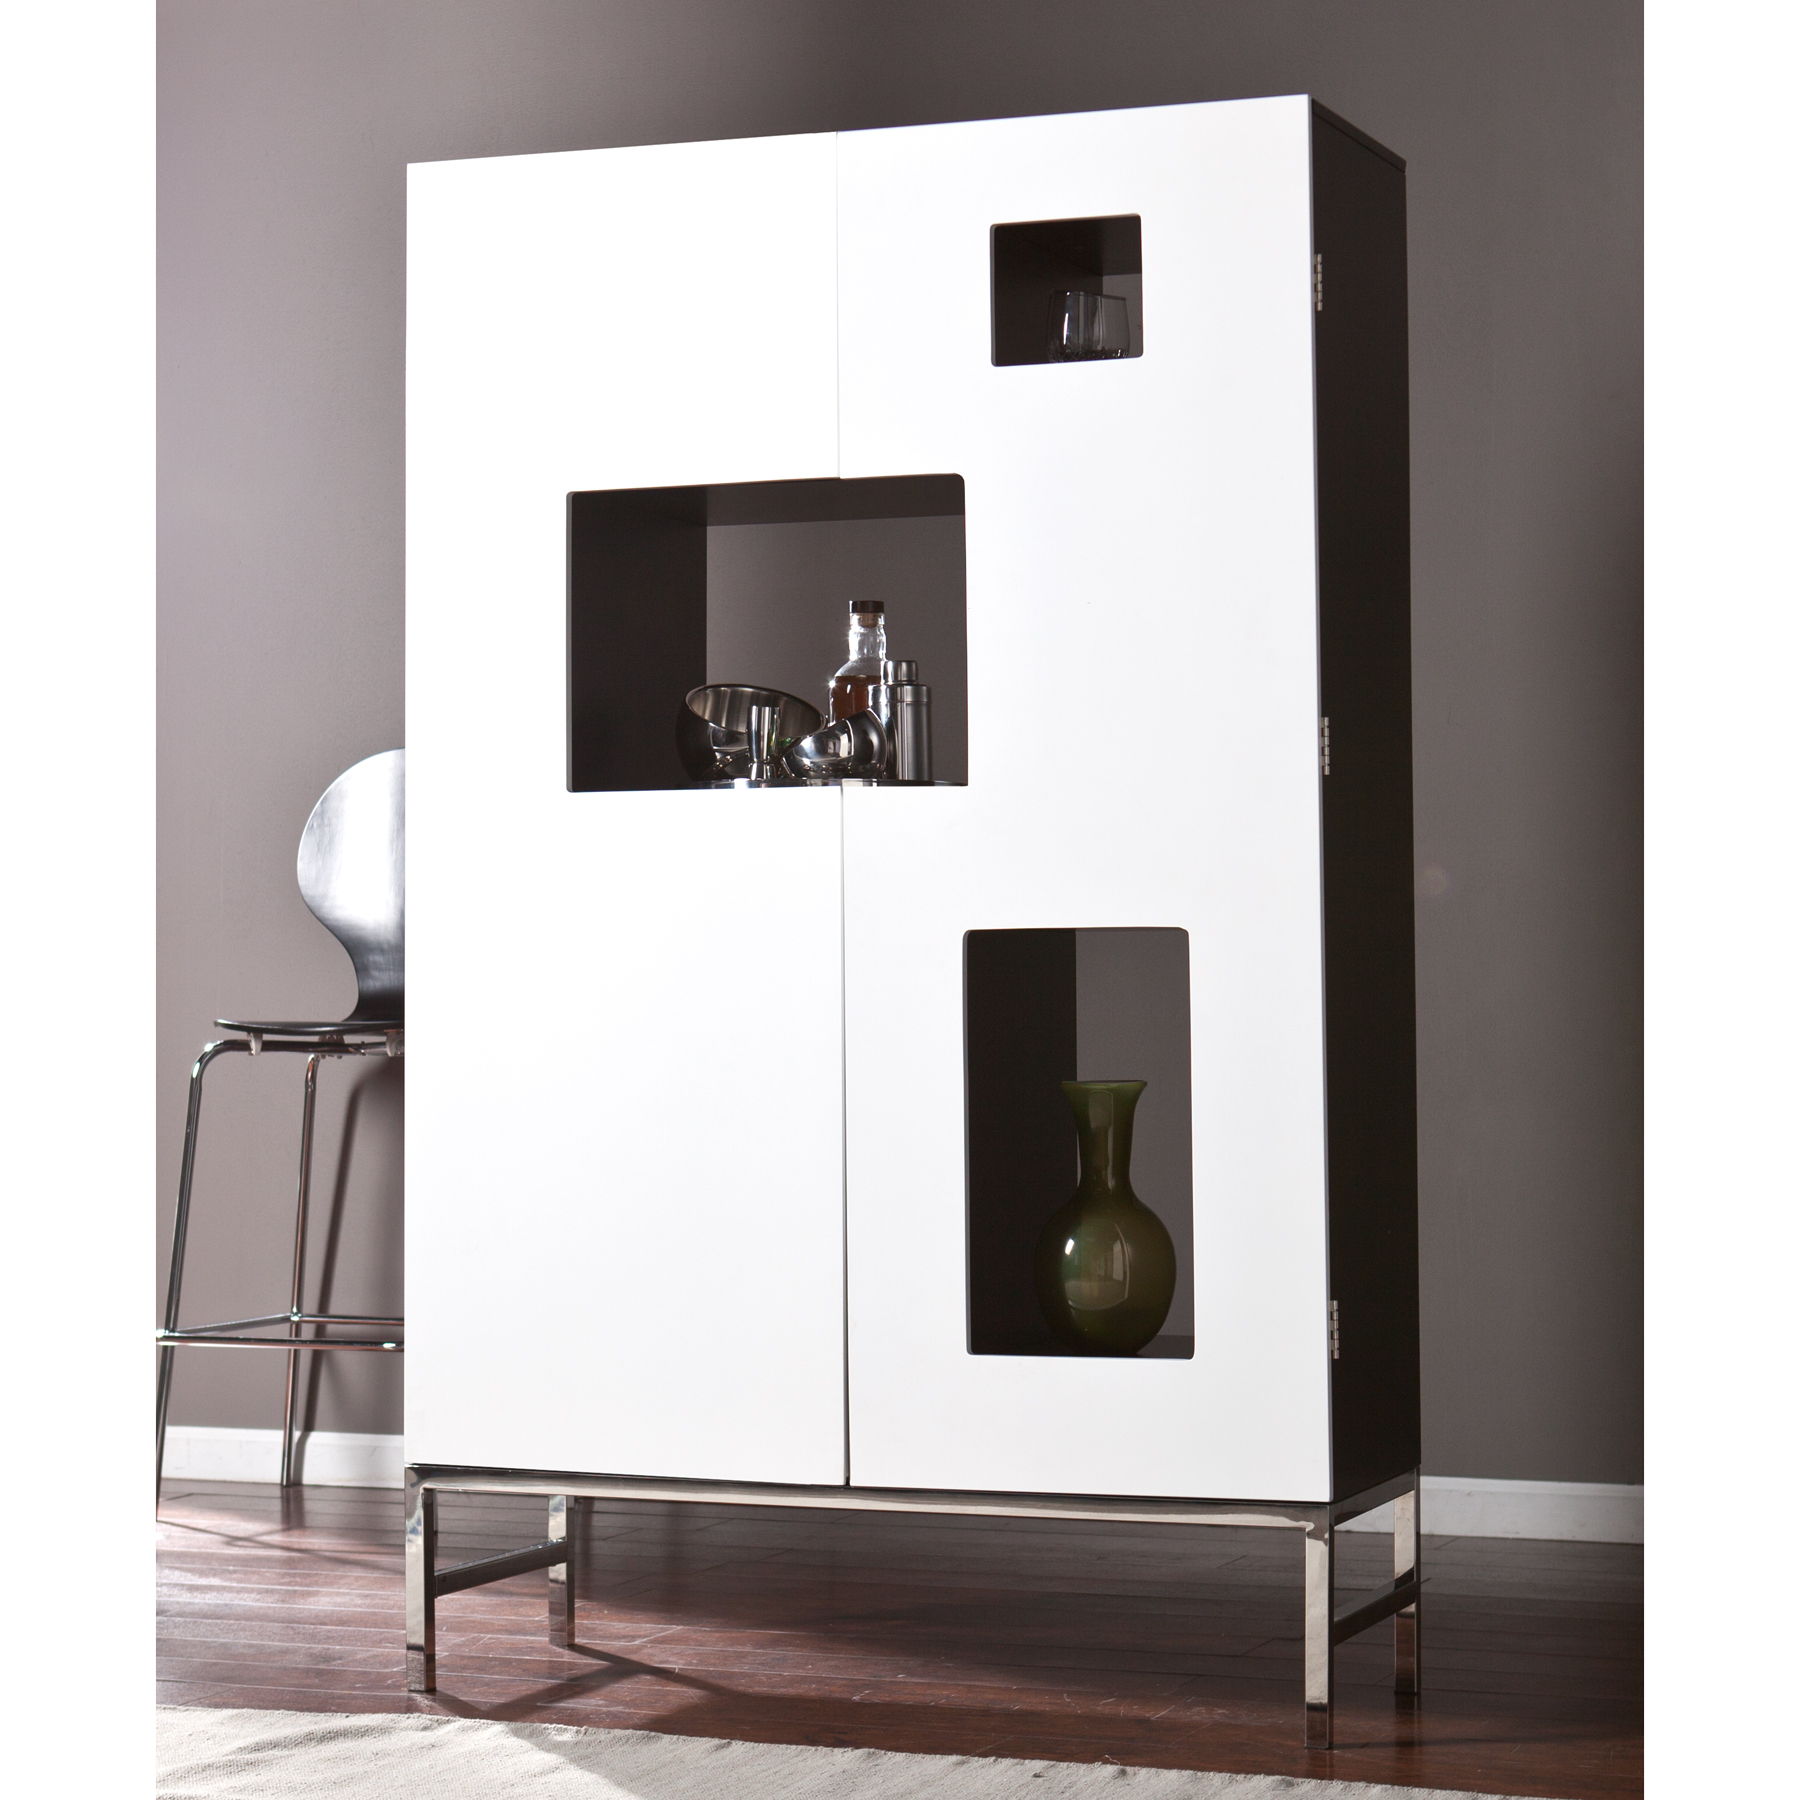 Furnituremaxx Rowena White Stainless Steel Shadowbox Wine/Bar Cabinet          